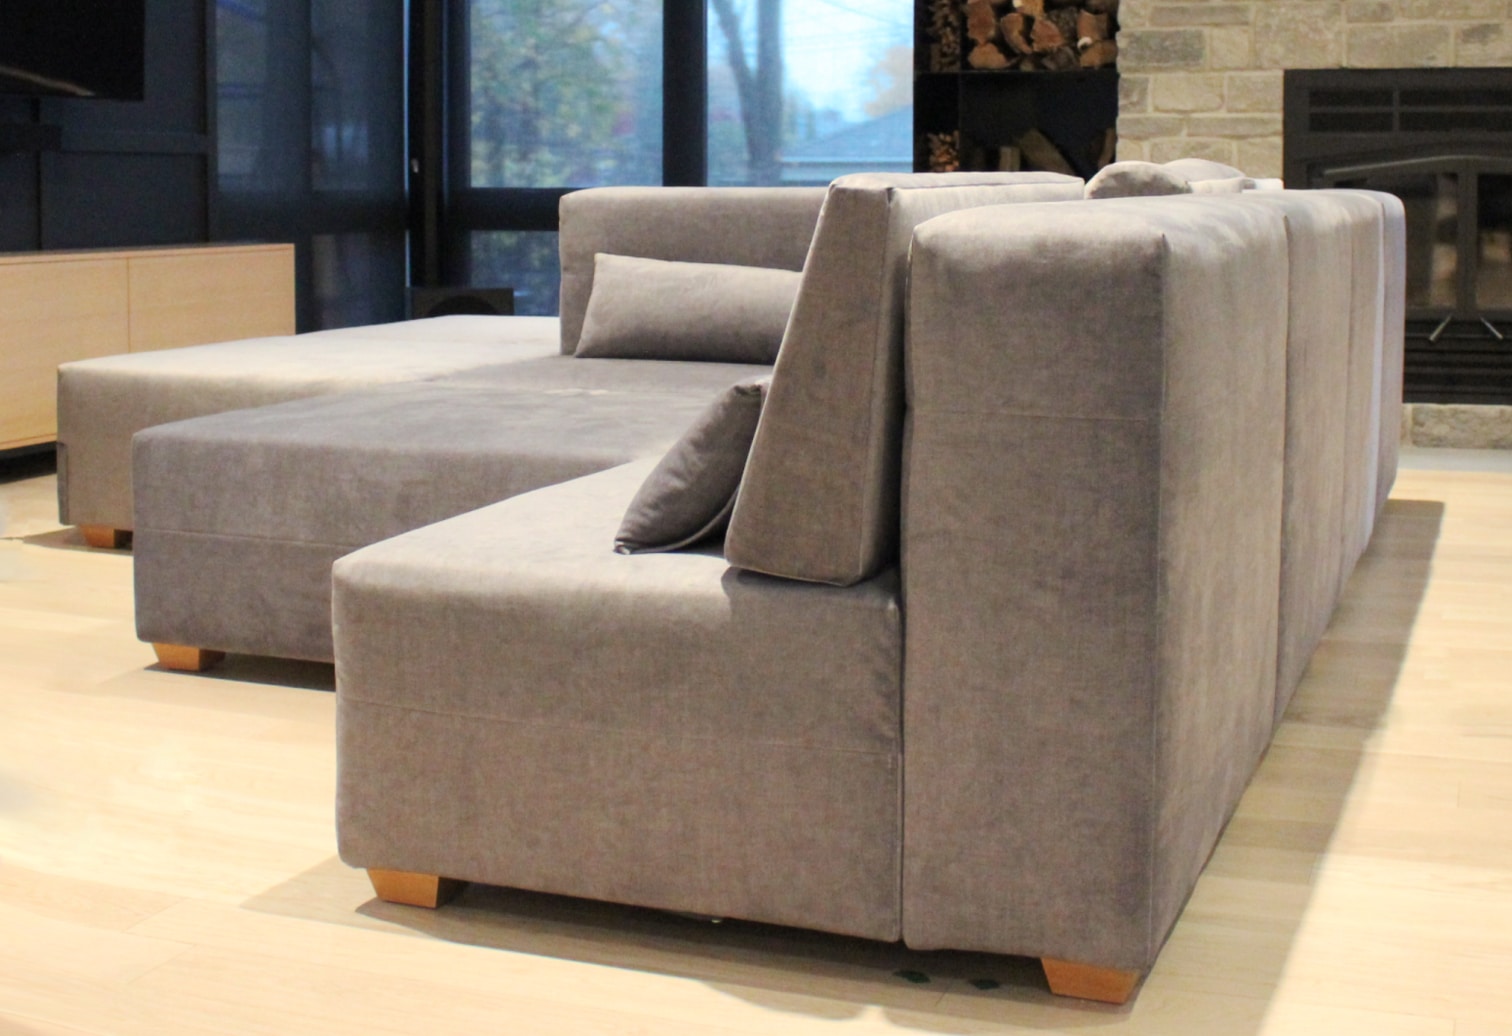 double sided sofa Sectional Bespoke Custom Made velvet covered